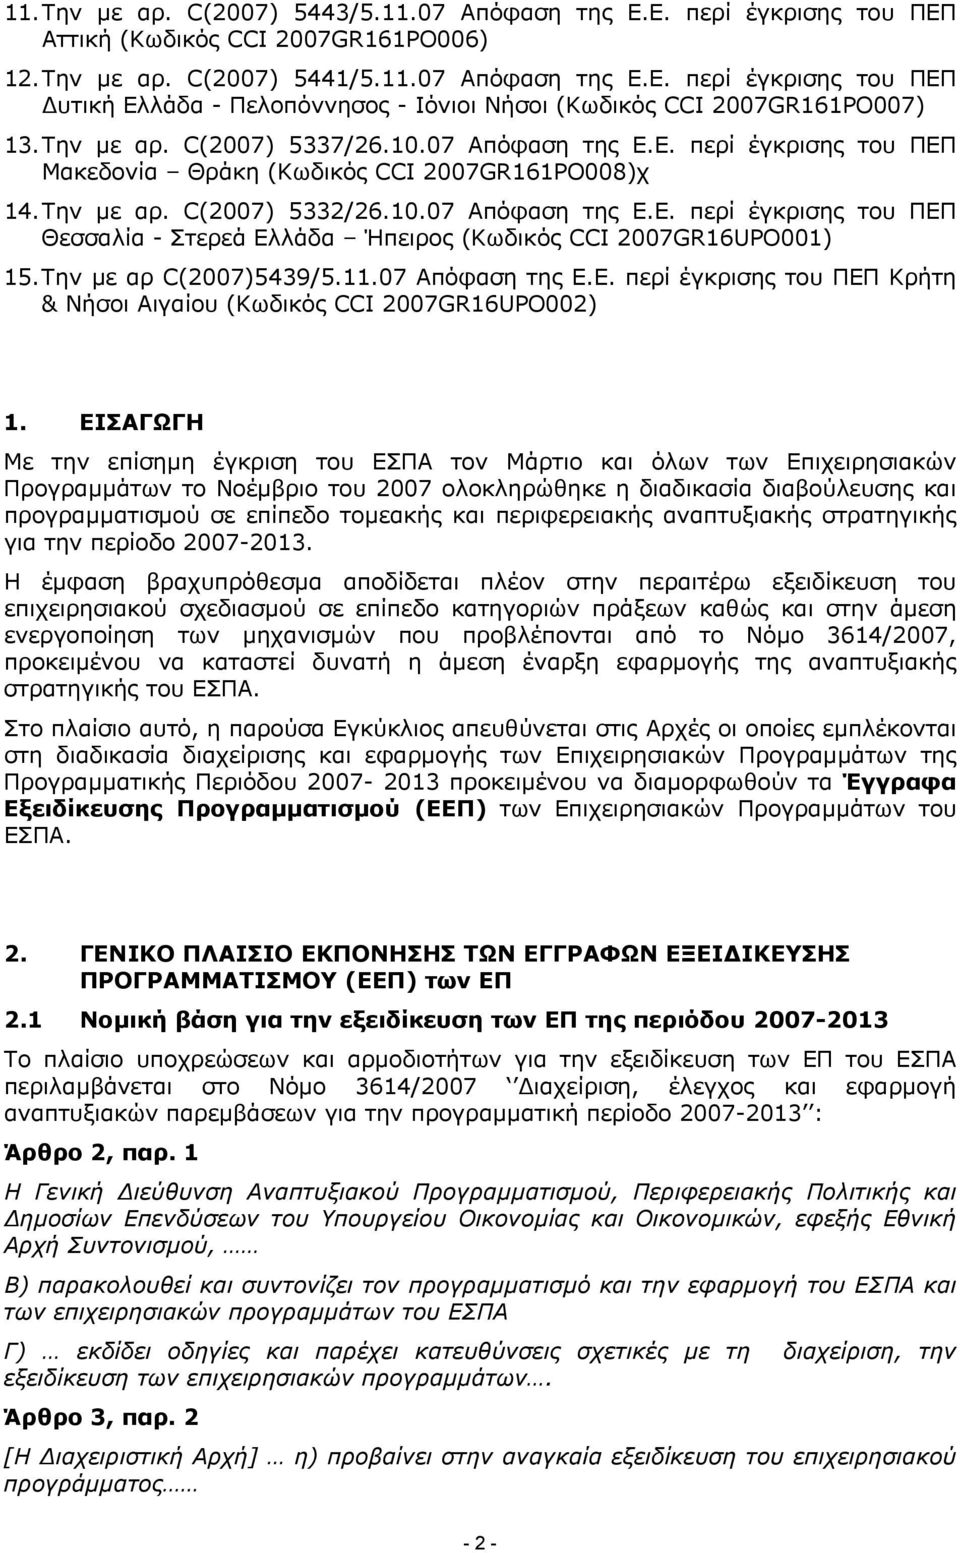 Την µε αρ C(2007)5439/5.11.07 Απόφαση της Ε.Ε. περί έγκρισης του ΠΕΠ Κρήτη & Νήσοι Αιγαίου (Κωδικός CCI 2007GR16UPO002) 1.